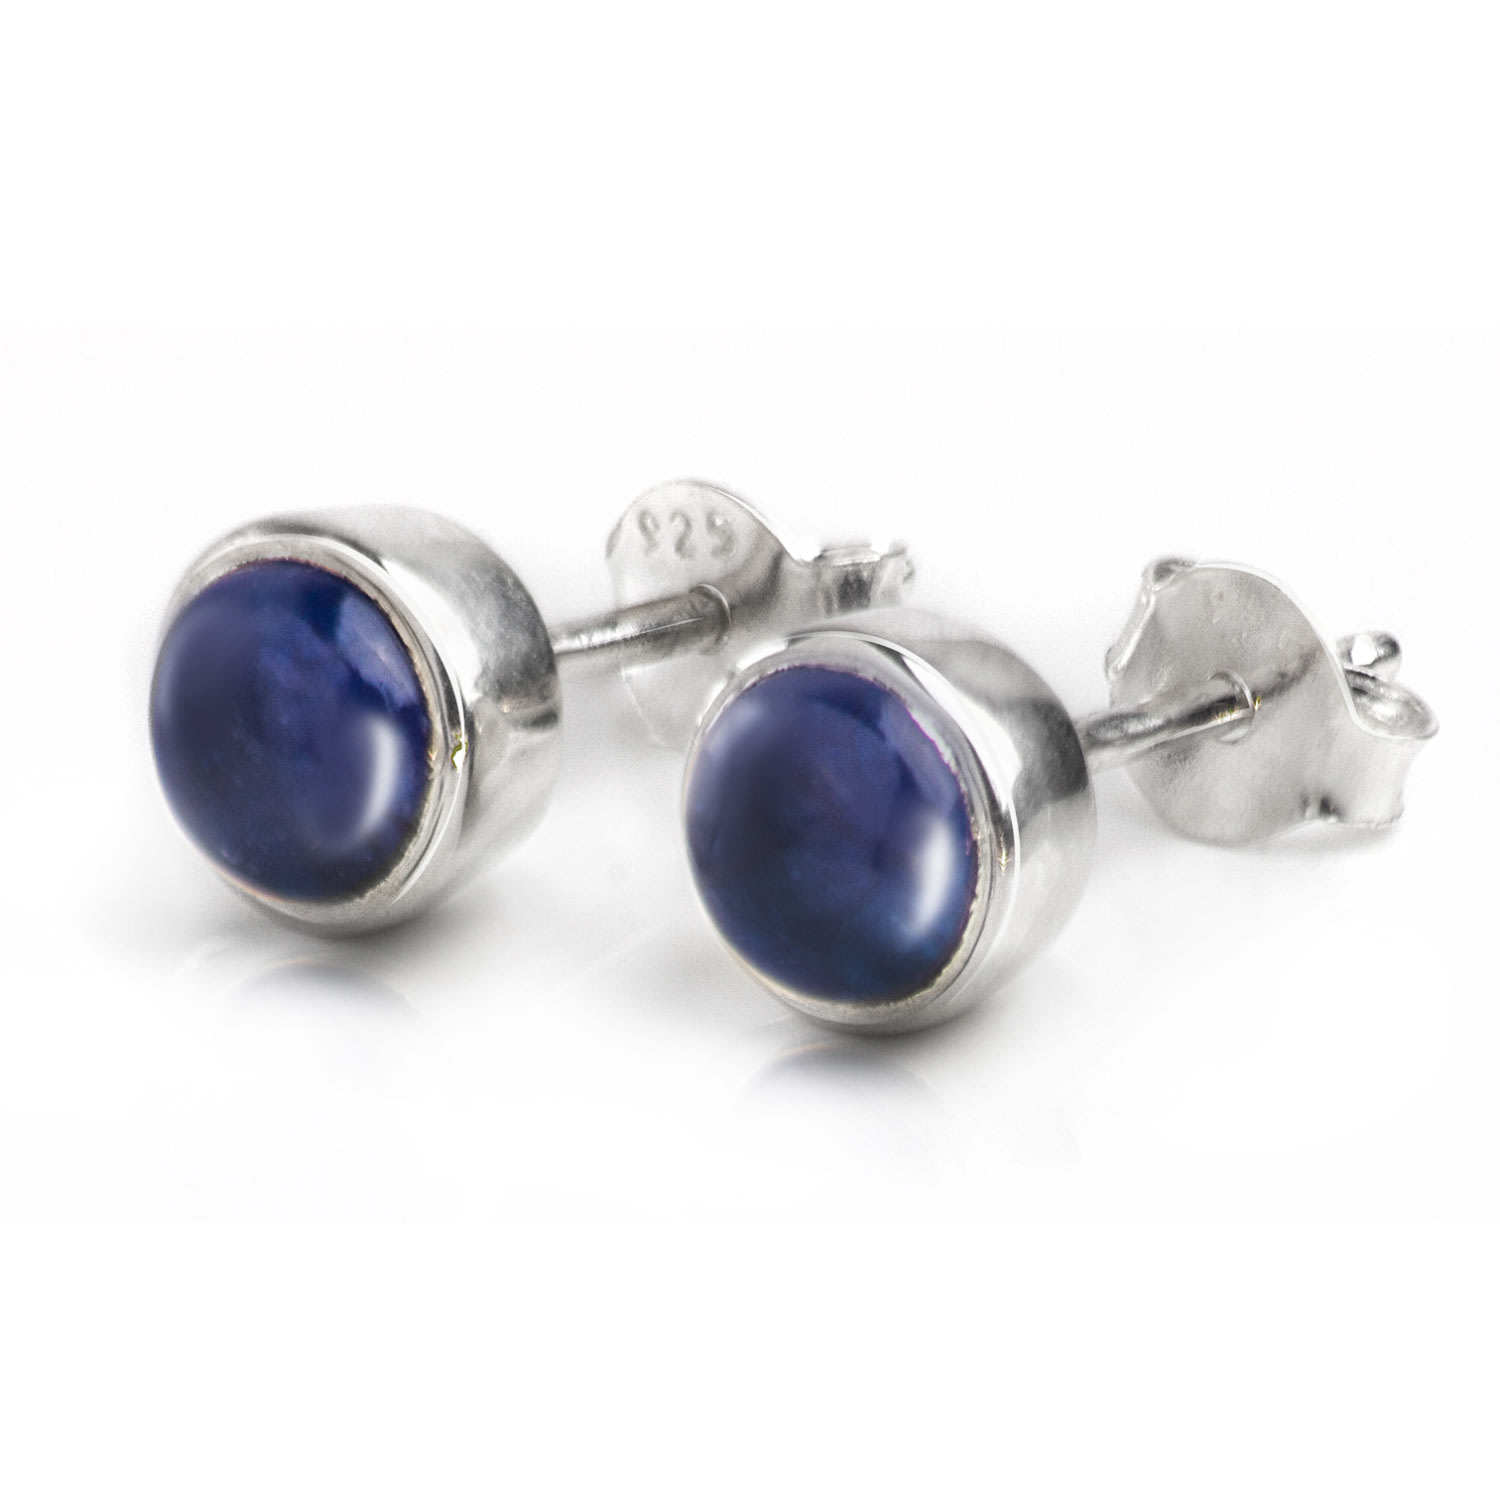 Women’s Blue / Silver September Birthstone Earrings Studs - Blue Sapphire In Sterling Silver The Jewellery Store London